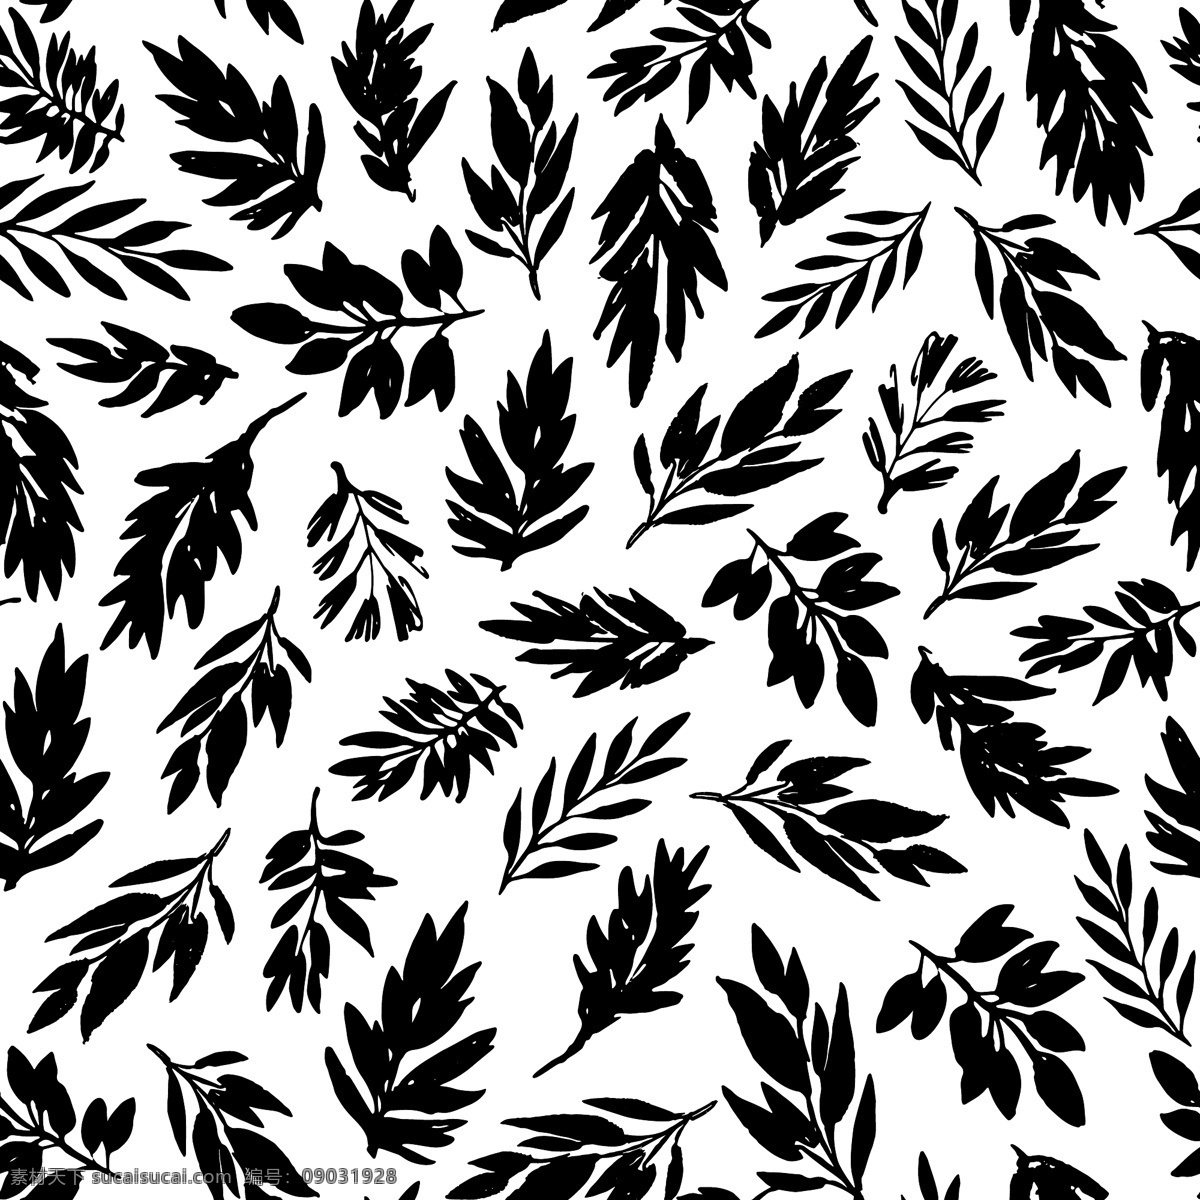 简约 黑白 树叶 背景 矢量 白色 黑色 平面素材 设计素材 矢量素材 叶子 植物